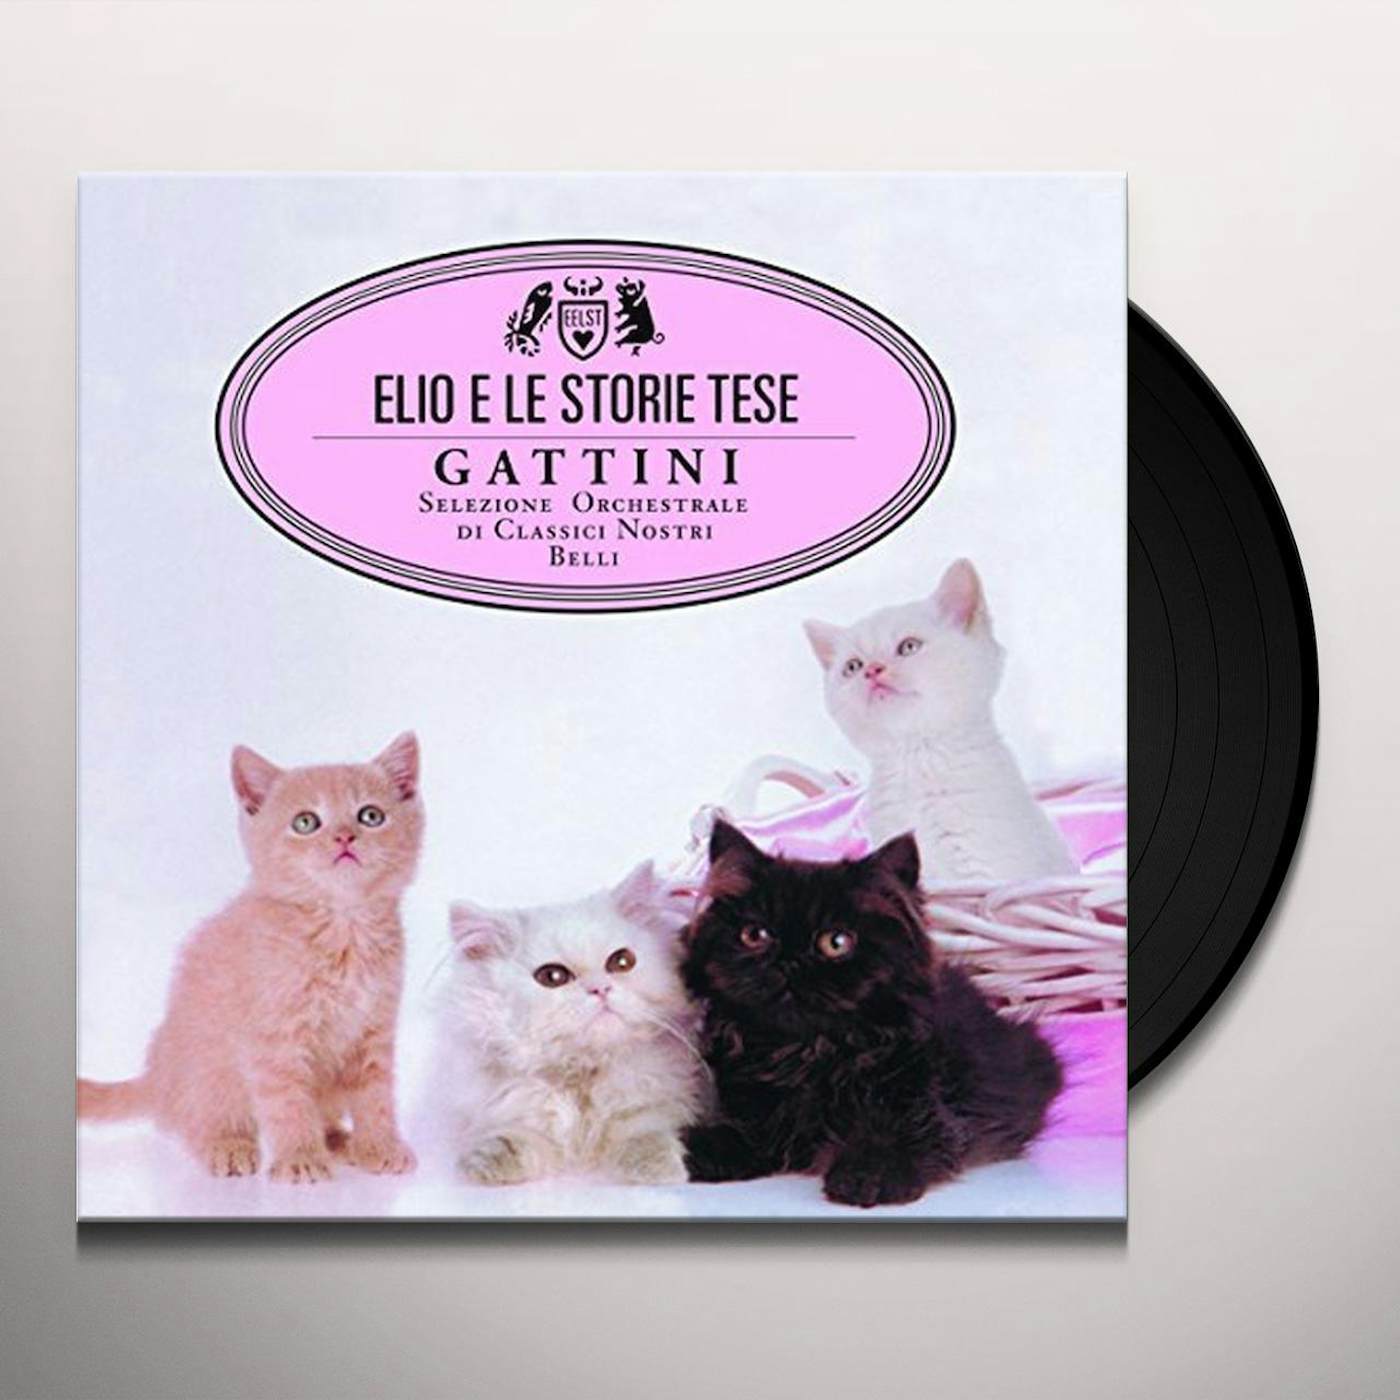 Elio e le Storie Tese Gattini Vinyl Record